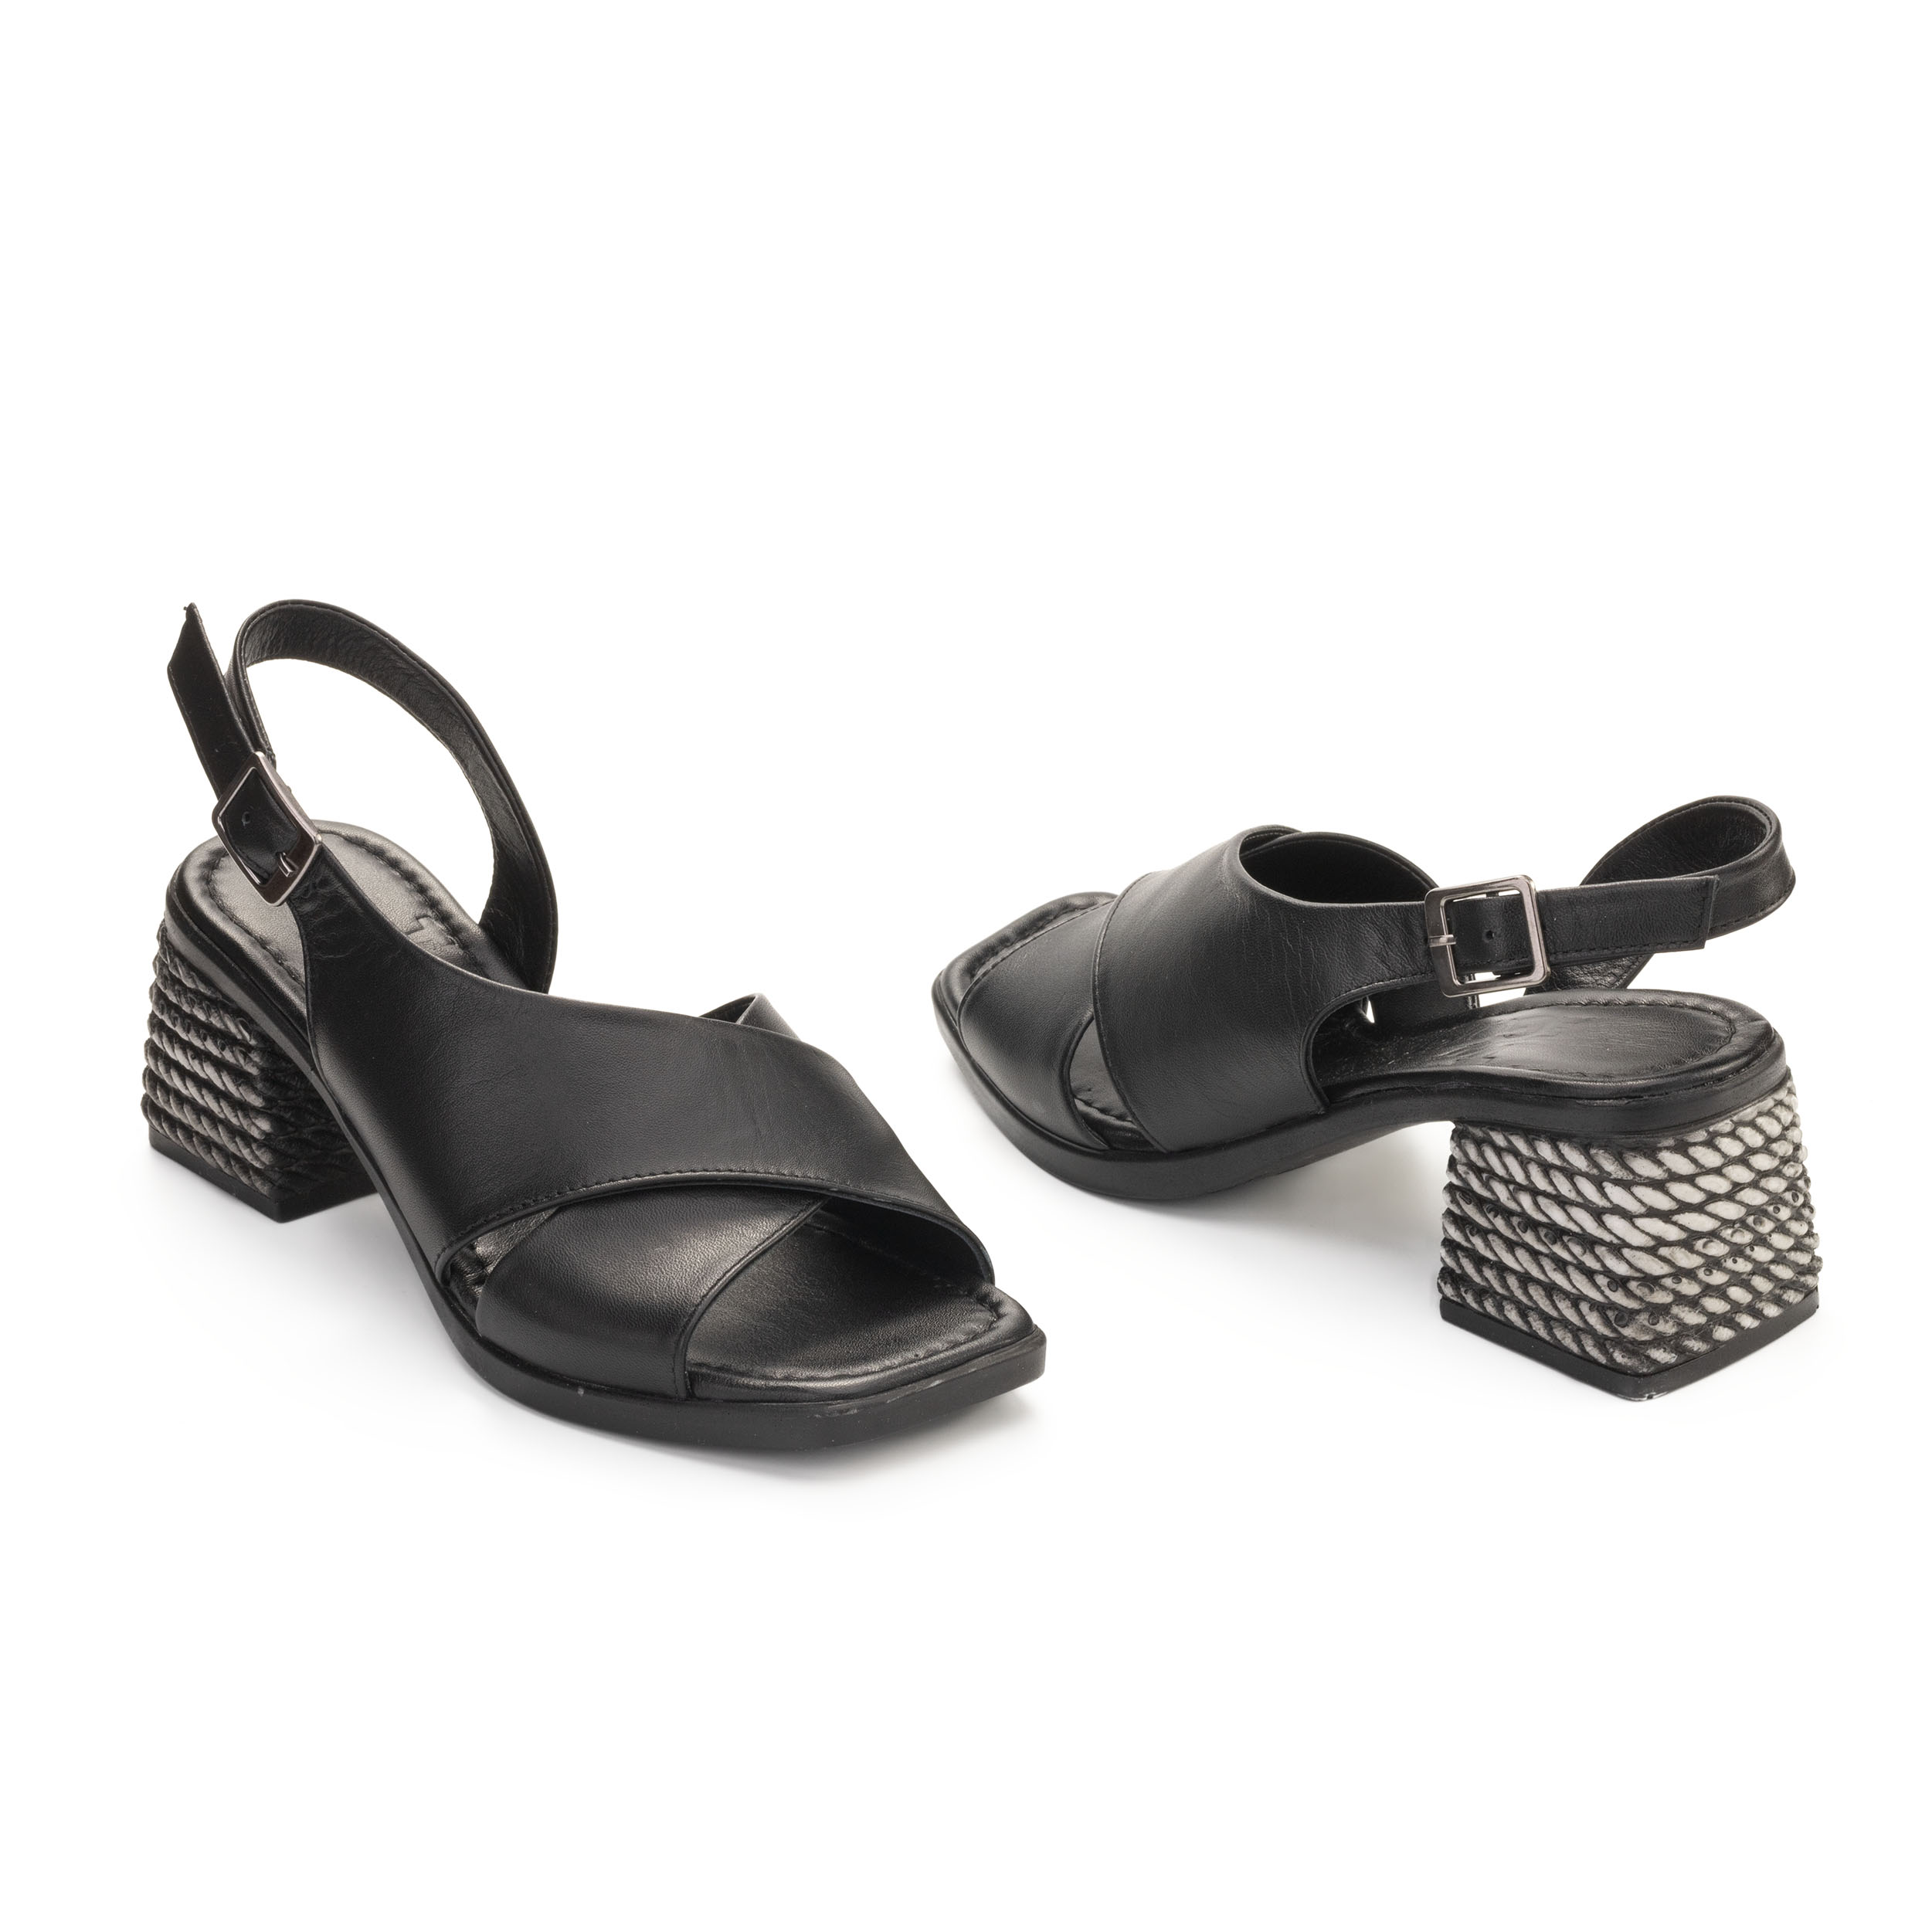 TwoEgoist Kadın Hakiki Deri Rahat Orta Topuklu Şık Açık Ayakkabı Sandalet, Renk: Siyah, Beden: 36